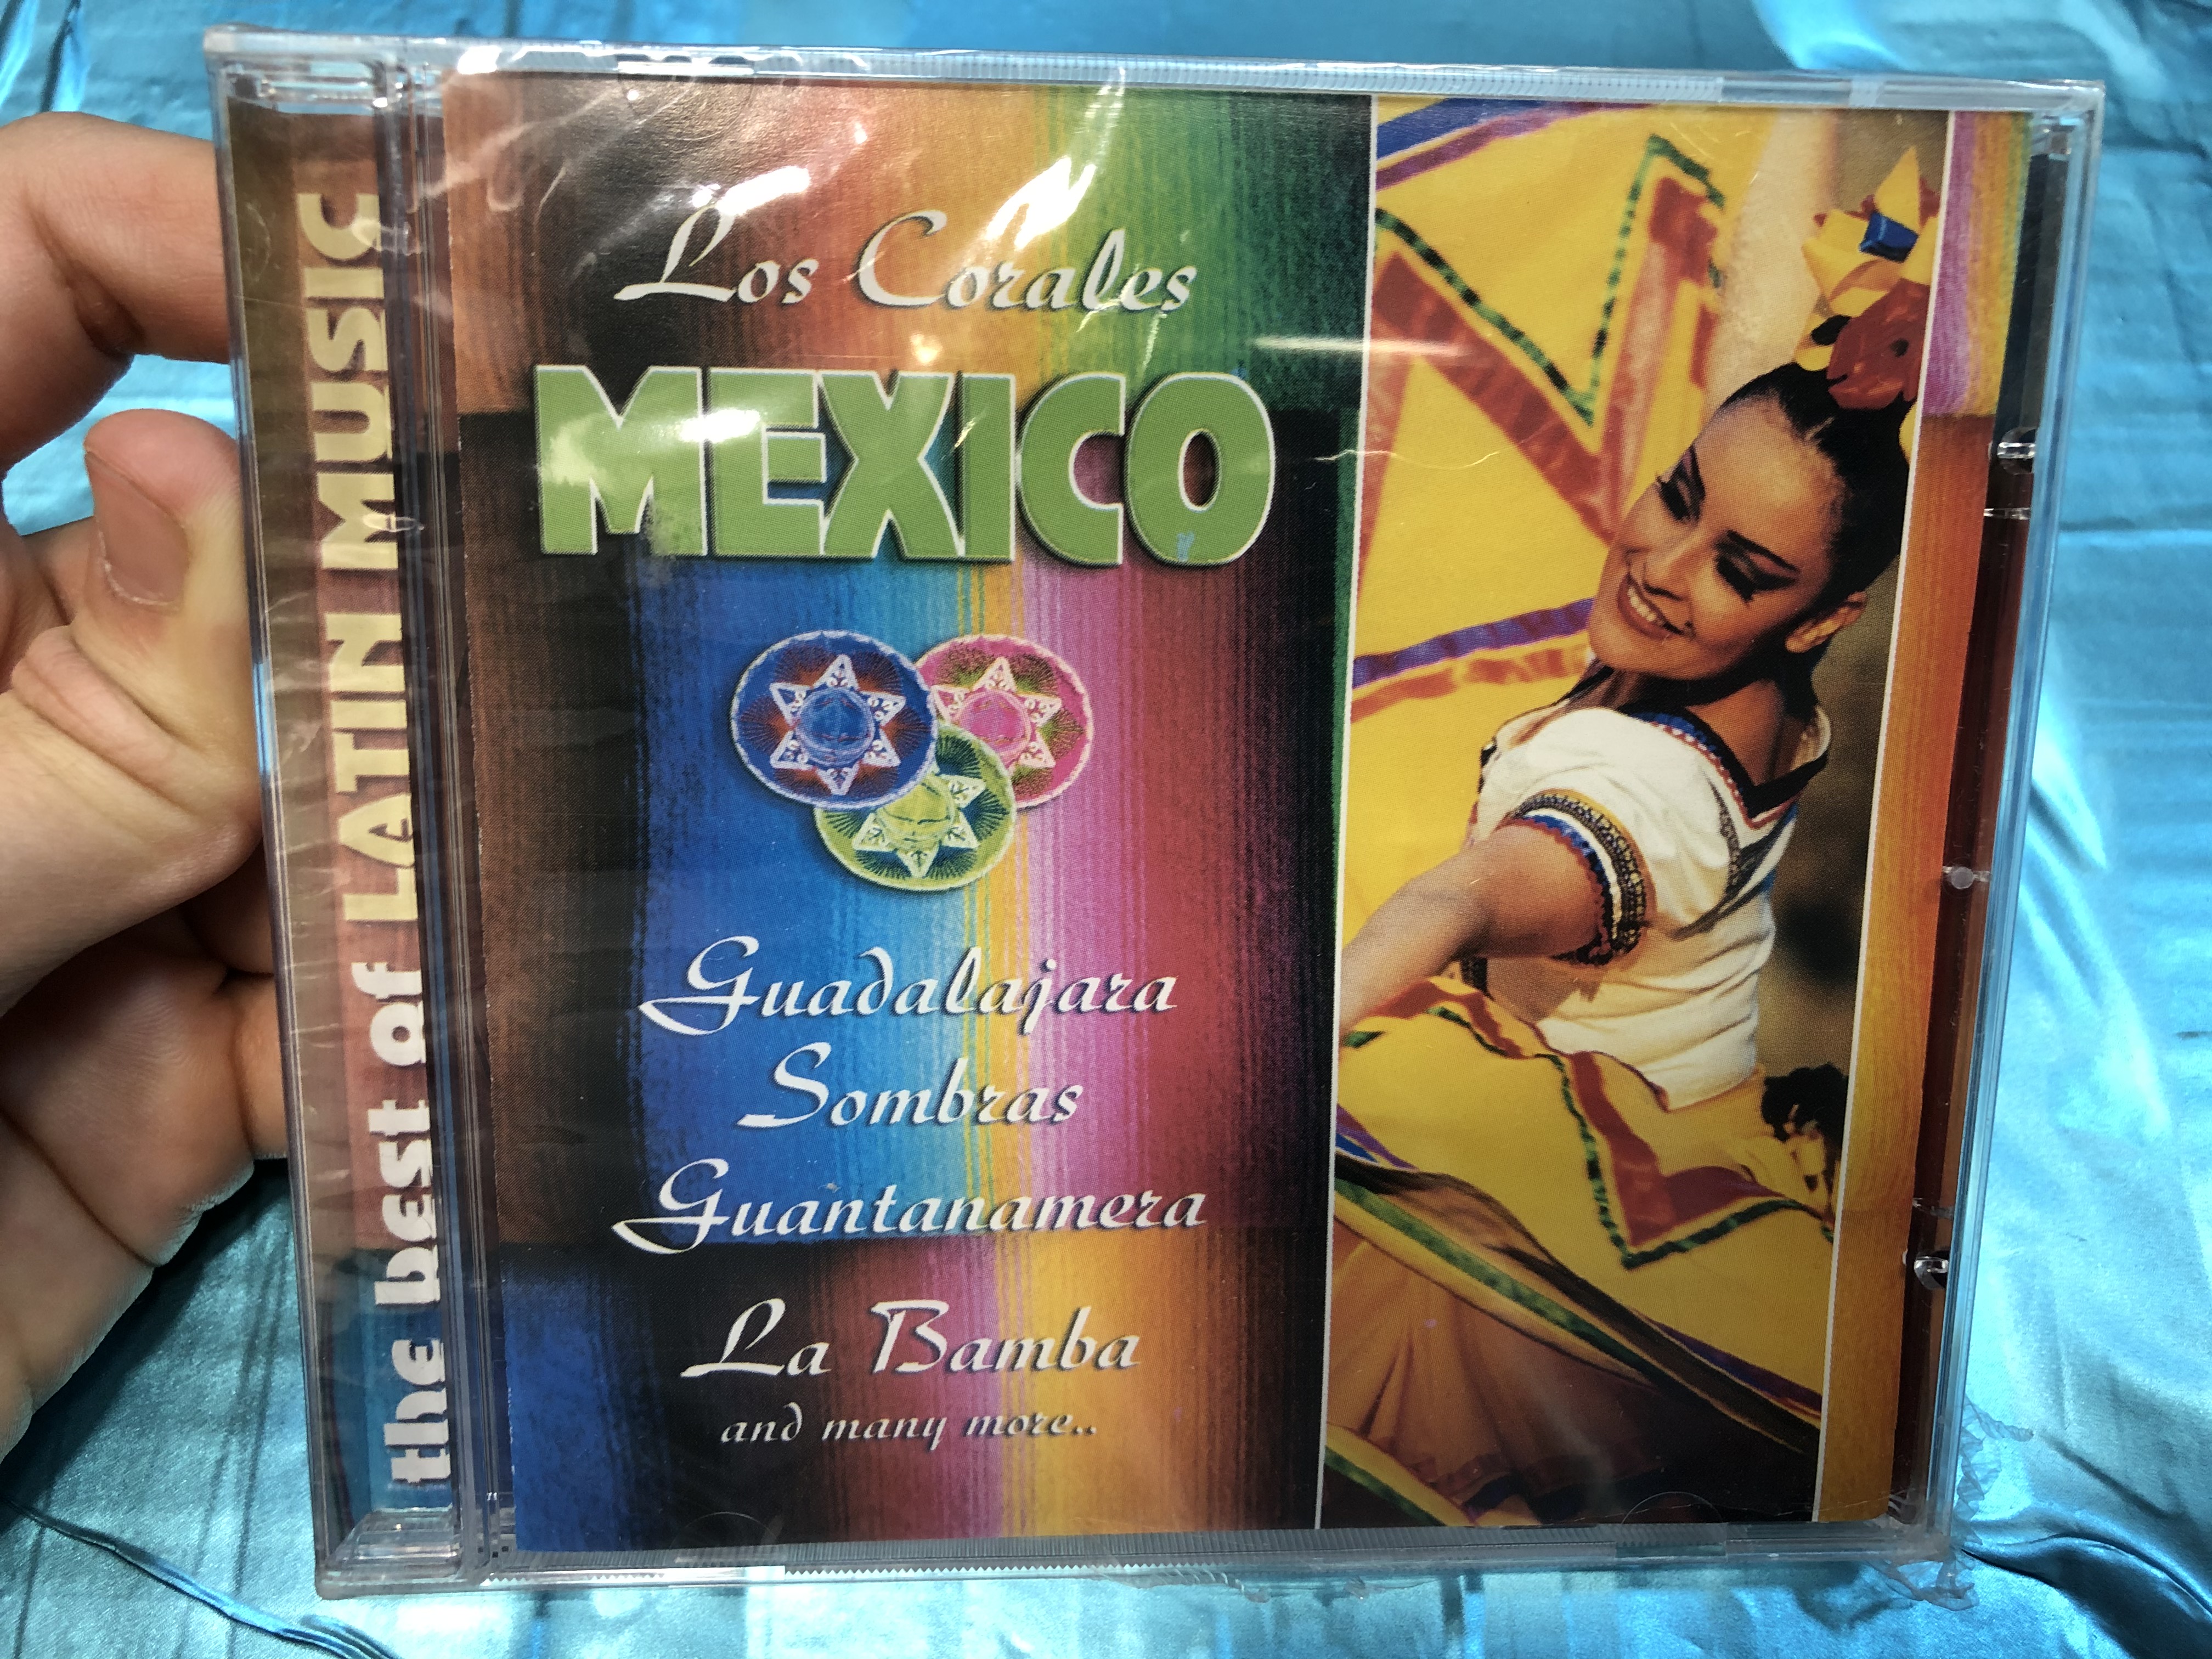 los-corales-mexico-the-best-of-latin-music-guadalajara-sombras-guantanamera-la-bamba-and-many-more-galaxy-audio-cd-2003-3808012-1-.jpg